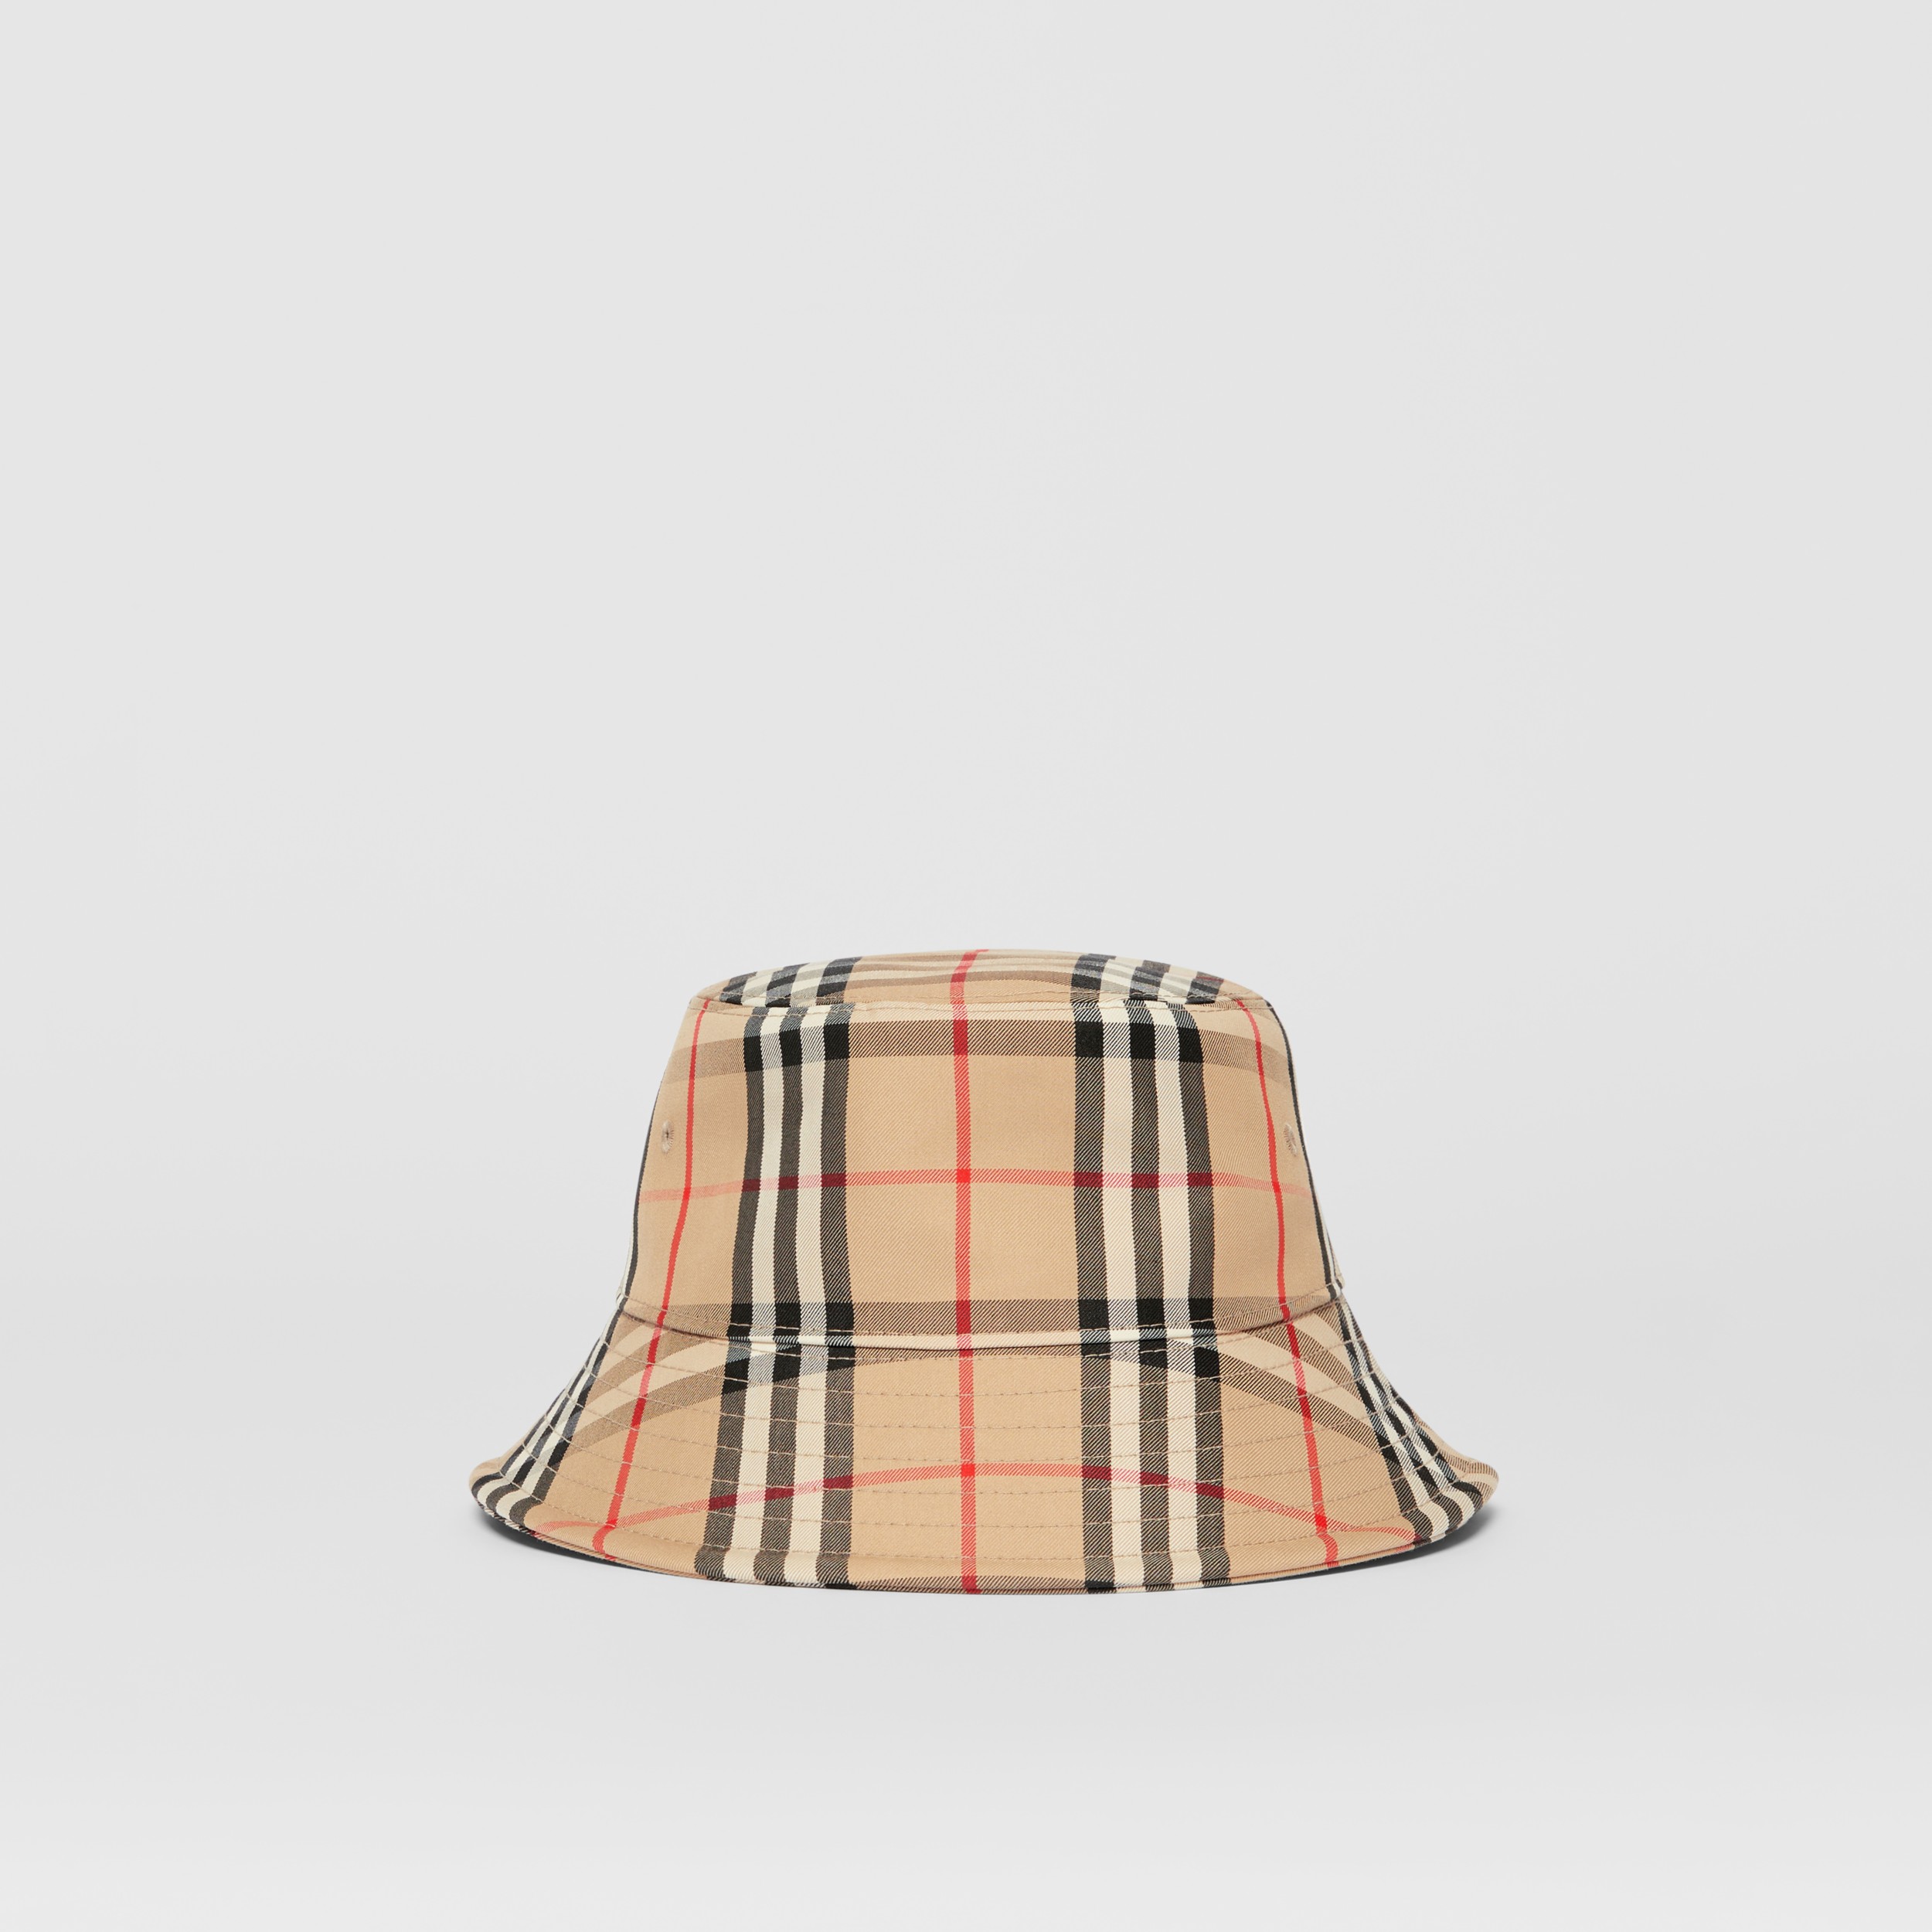 Total 40+ imagen burberry style bucket hat